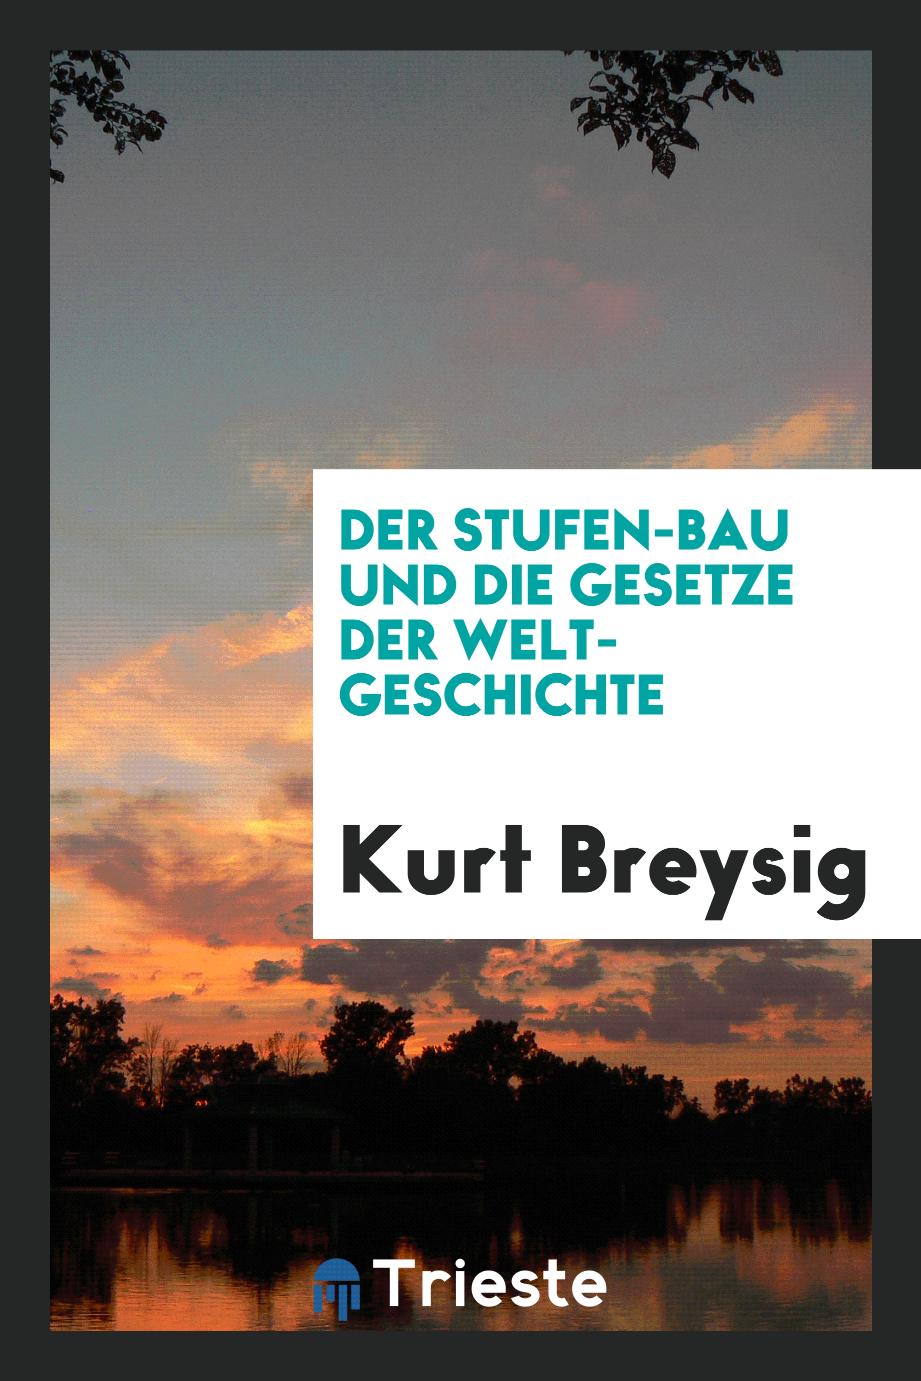 Kurt Breysig - Der Stufen-Bau und die Gesetze der Welt-Geschichte